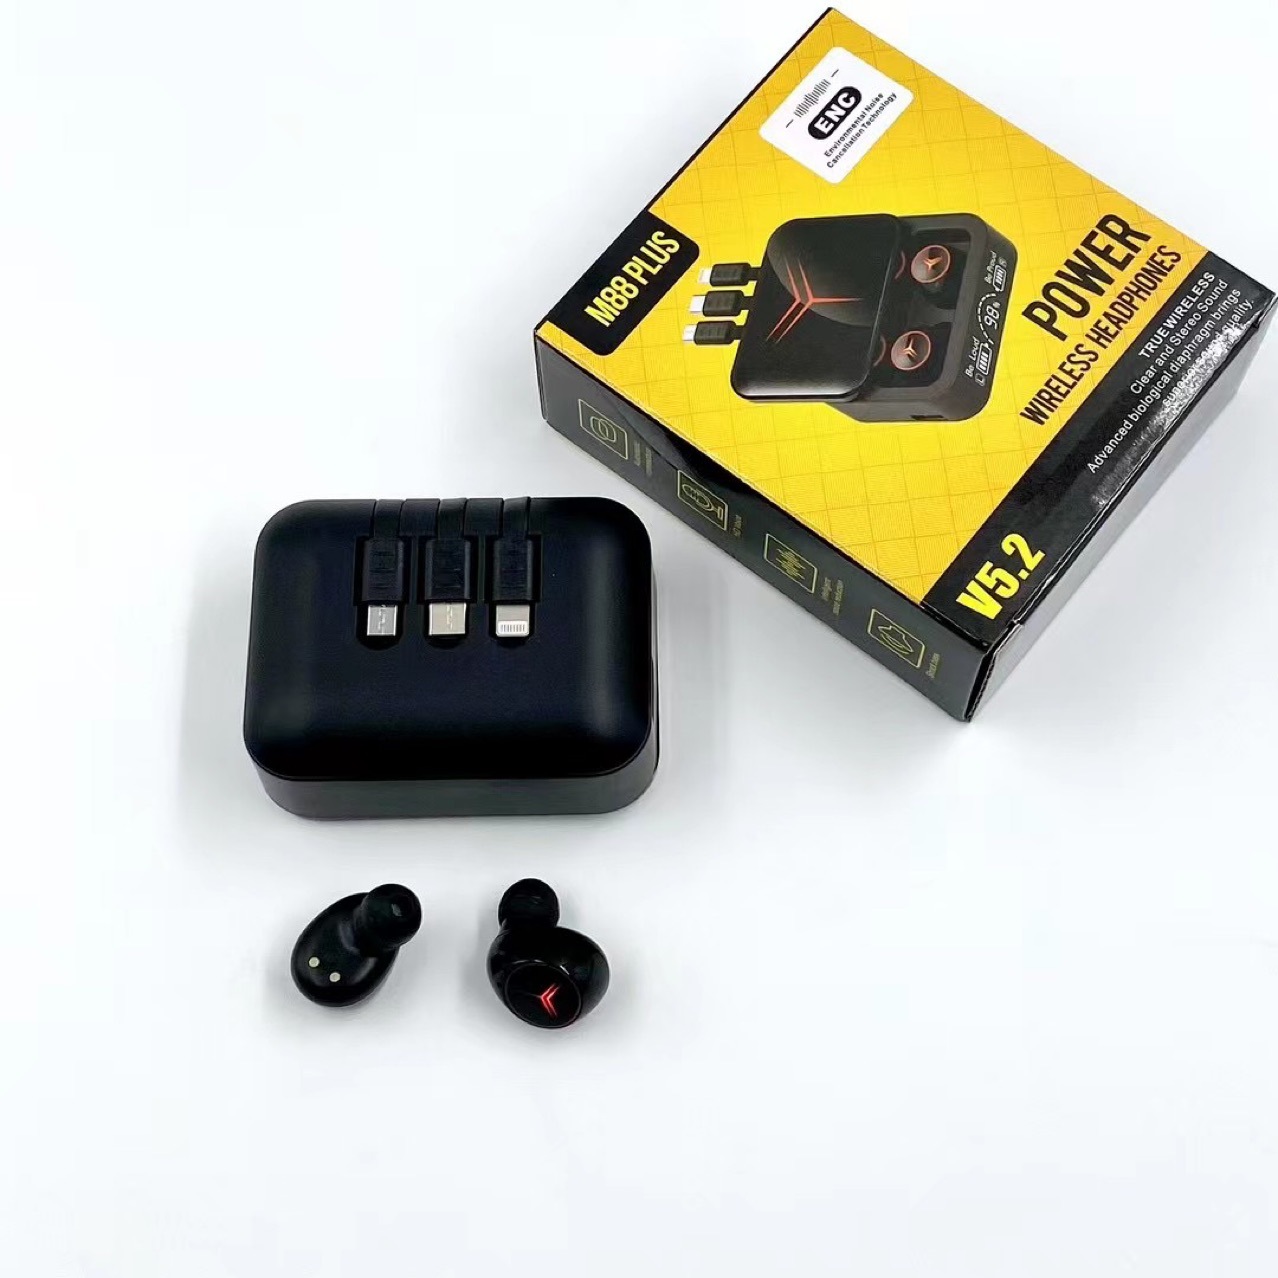 Orijinal M88 Plus True True Kablosuz Stereo Kulaklıklar Mic Gamer kulaklık LED Ekran 1200mAh Power Bank Kulaklıkları Oyun Kulaklıkları